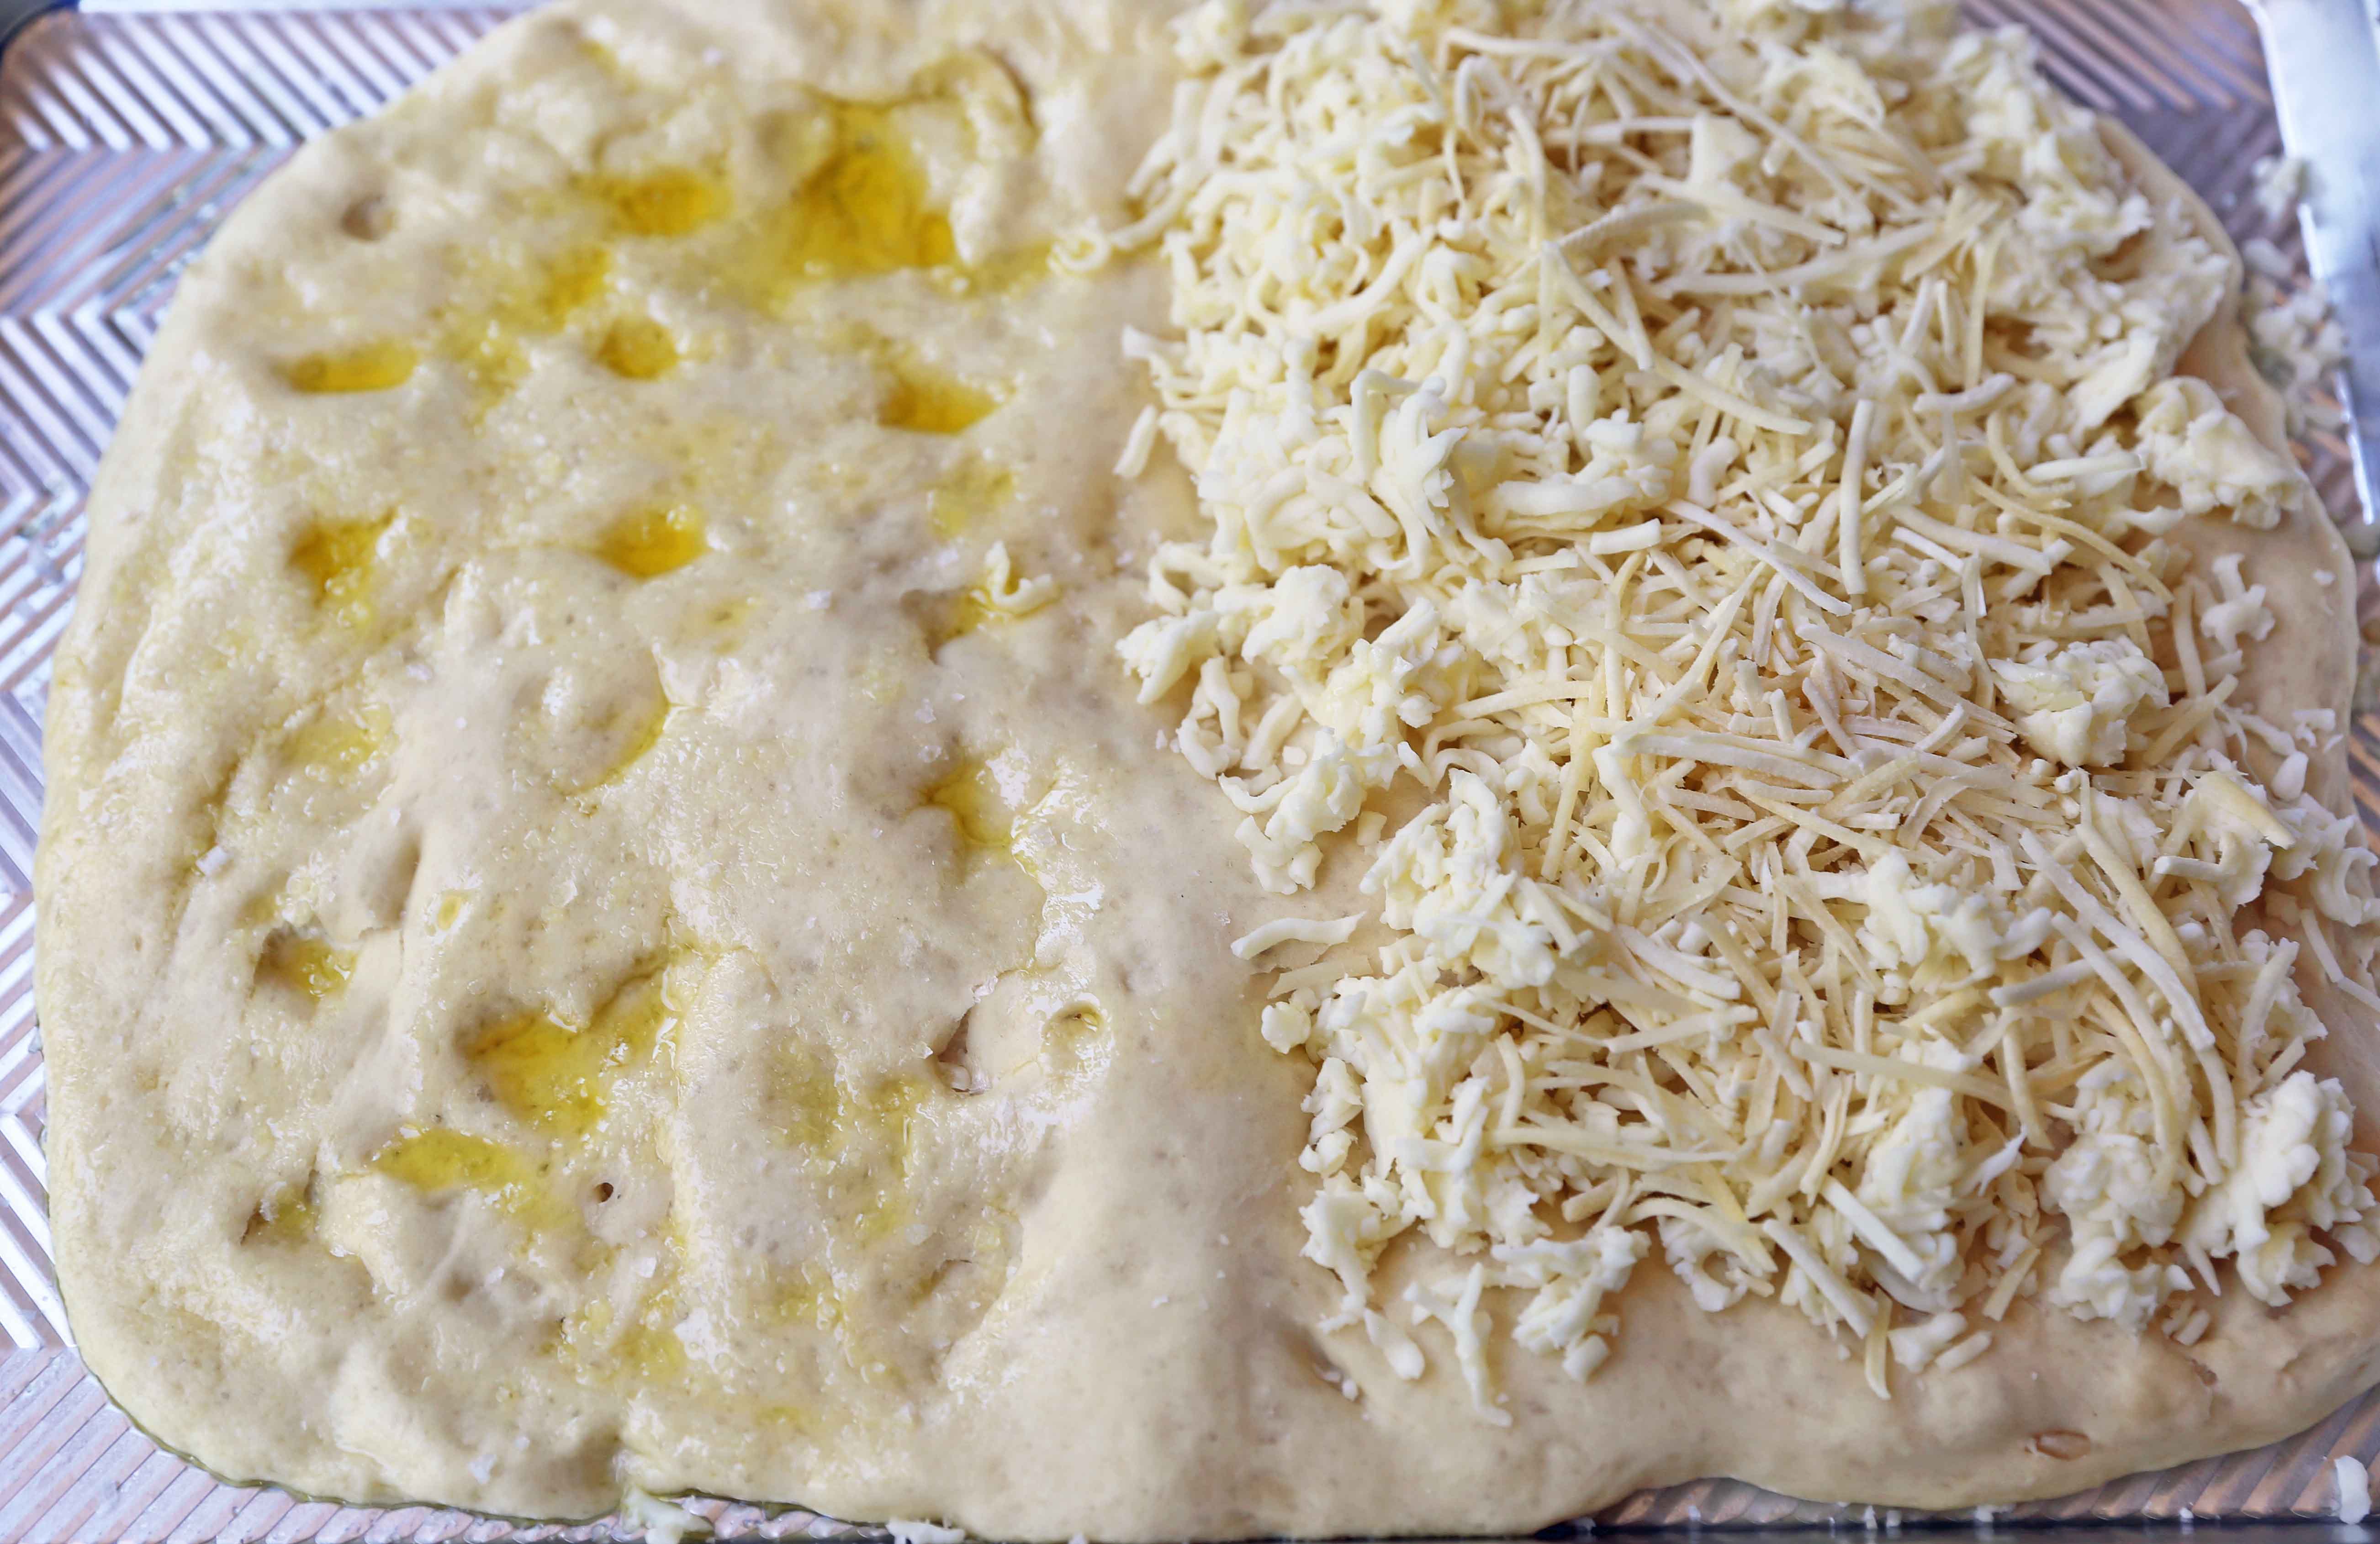 Ricetta Focaccia al formaggio. Come fare il pane di focaccia al formaggio all'aglio da zero. I migliori grissini di formaggio all'aglio. www.moderhoney.com # focaccia